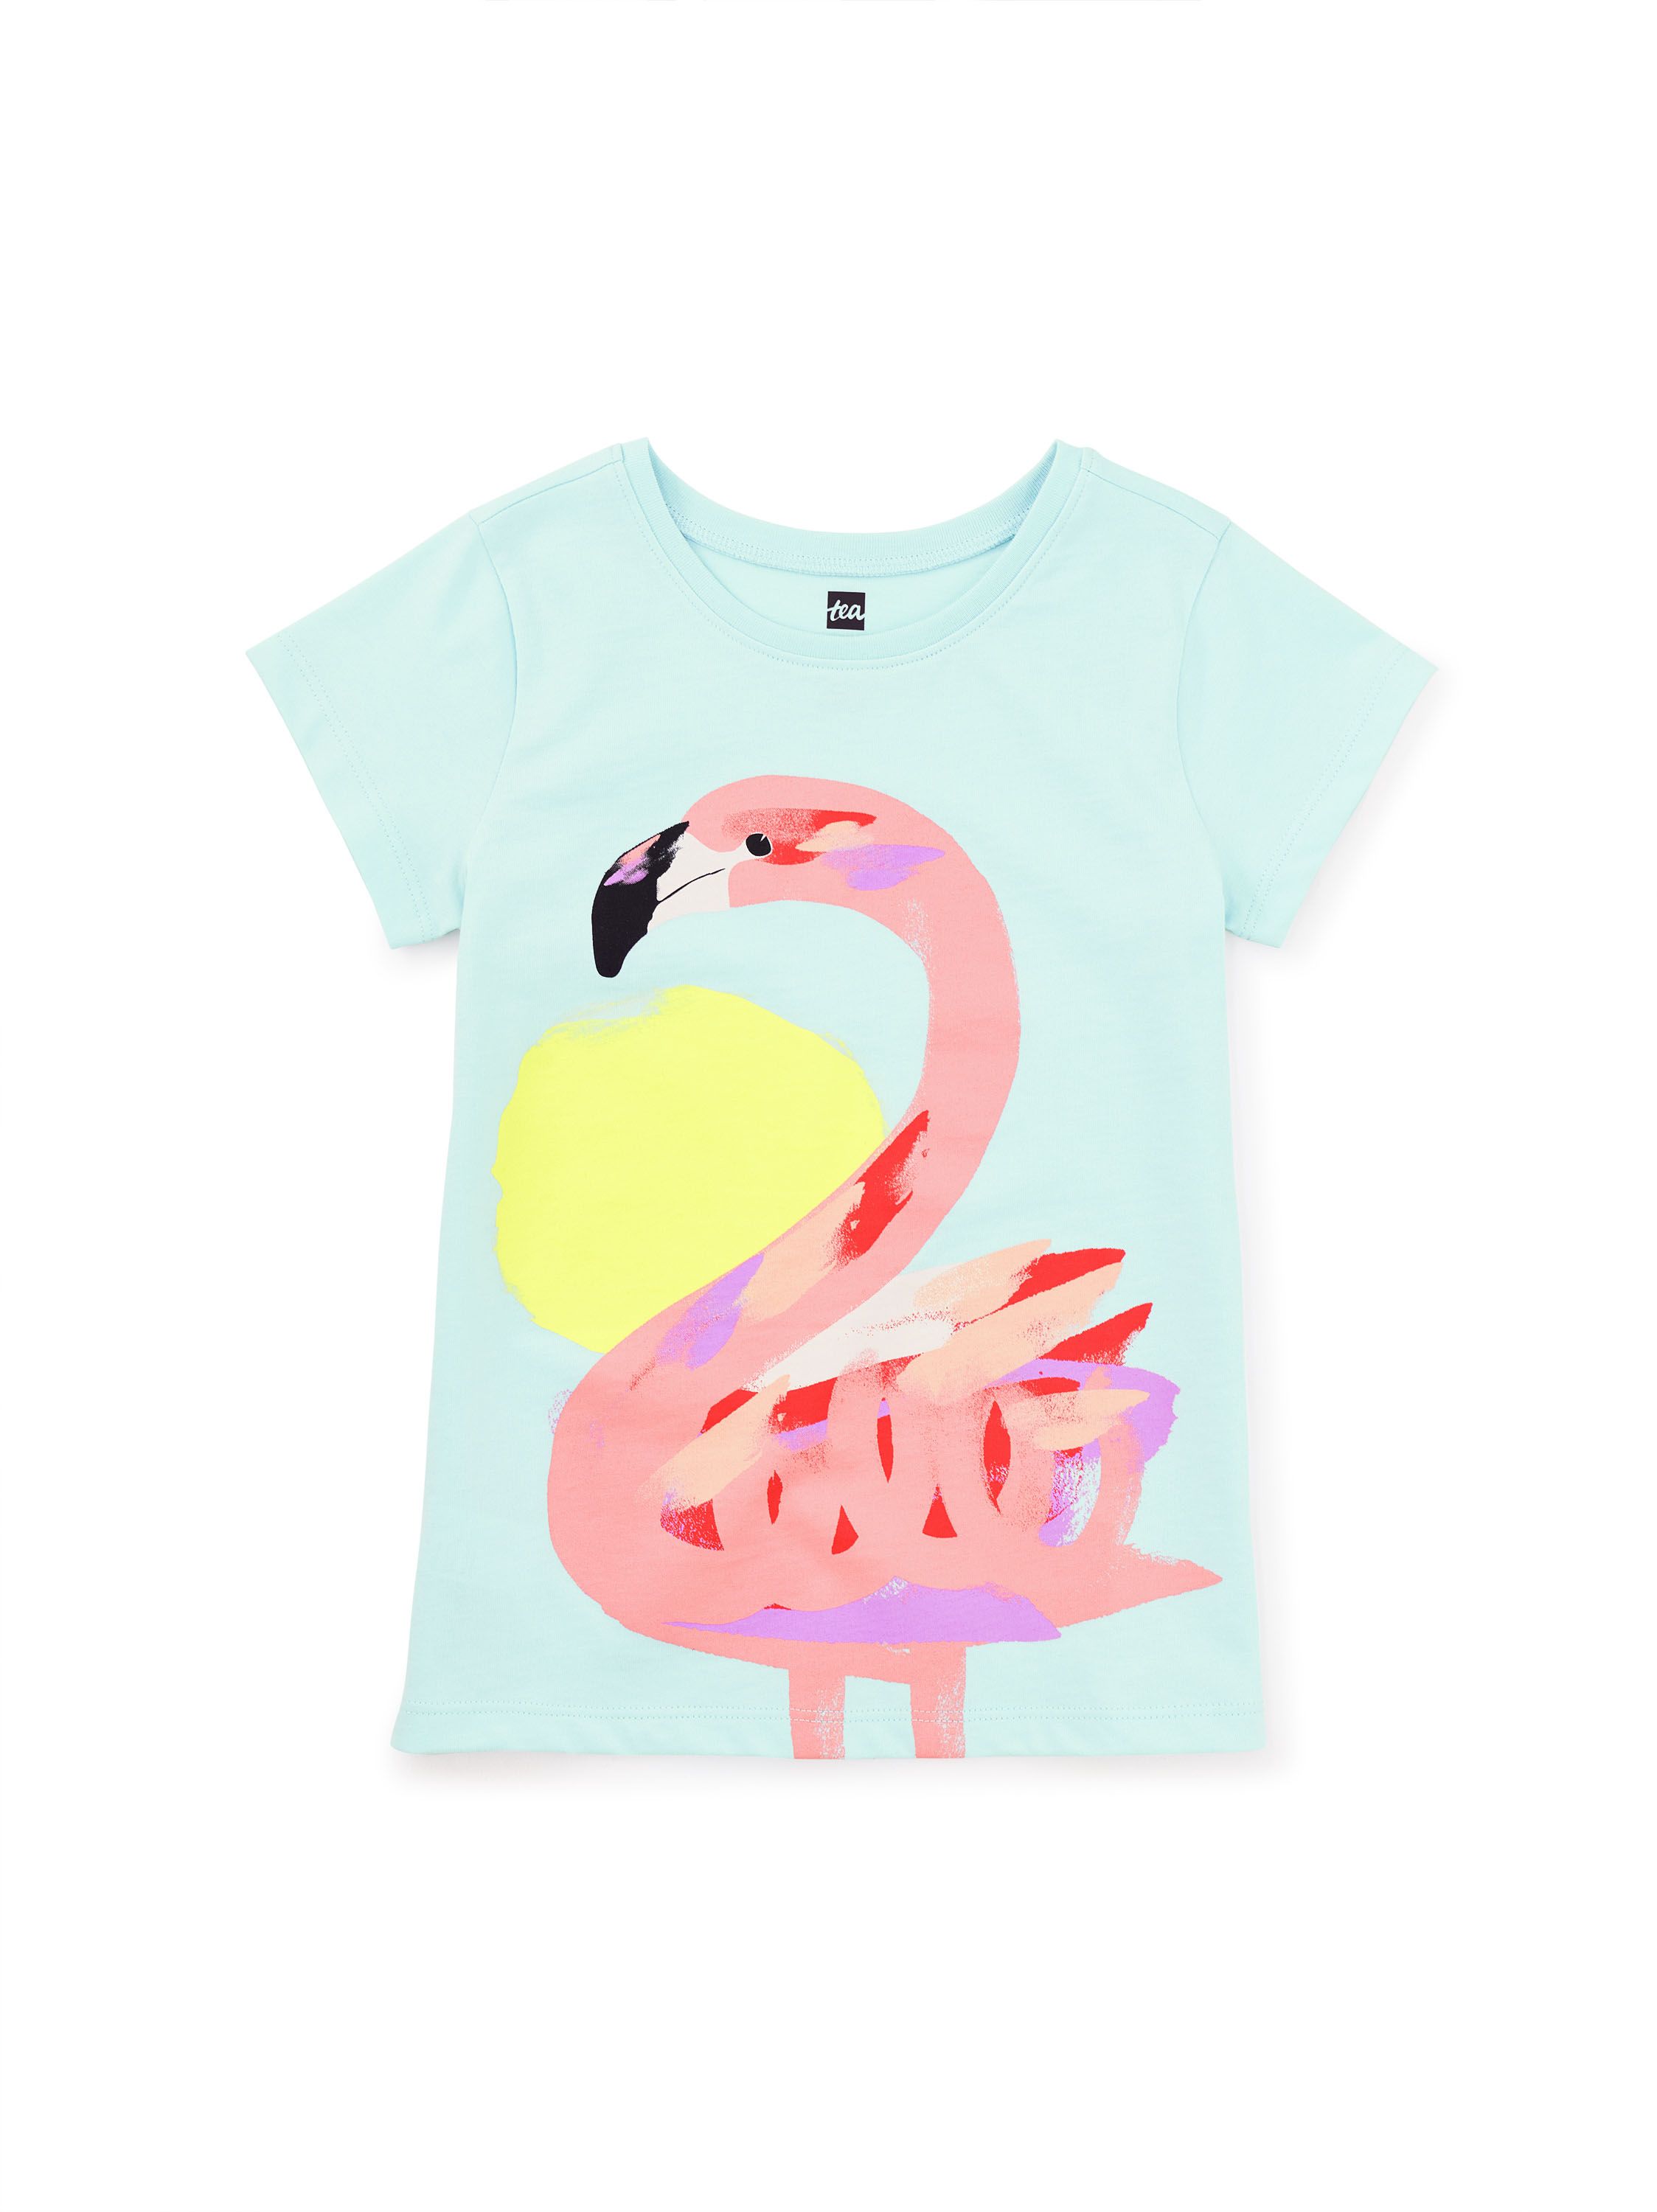 Fun Flamingo Graphic Tee | Tea Collection